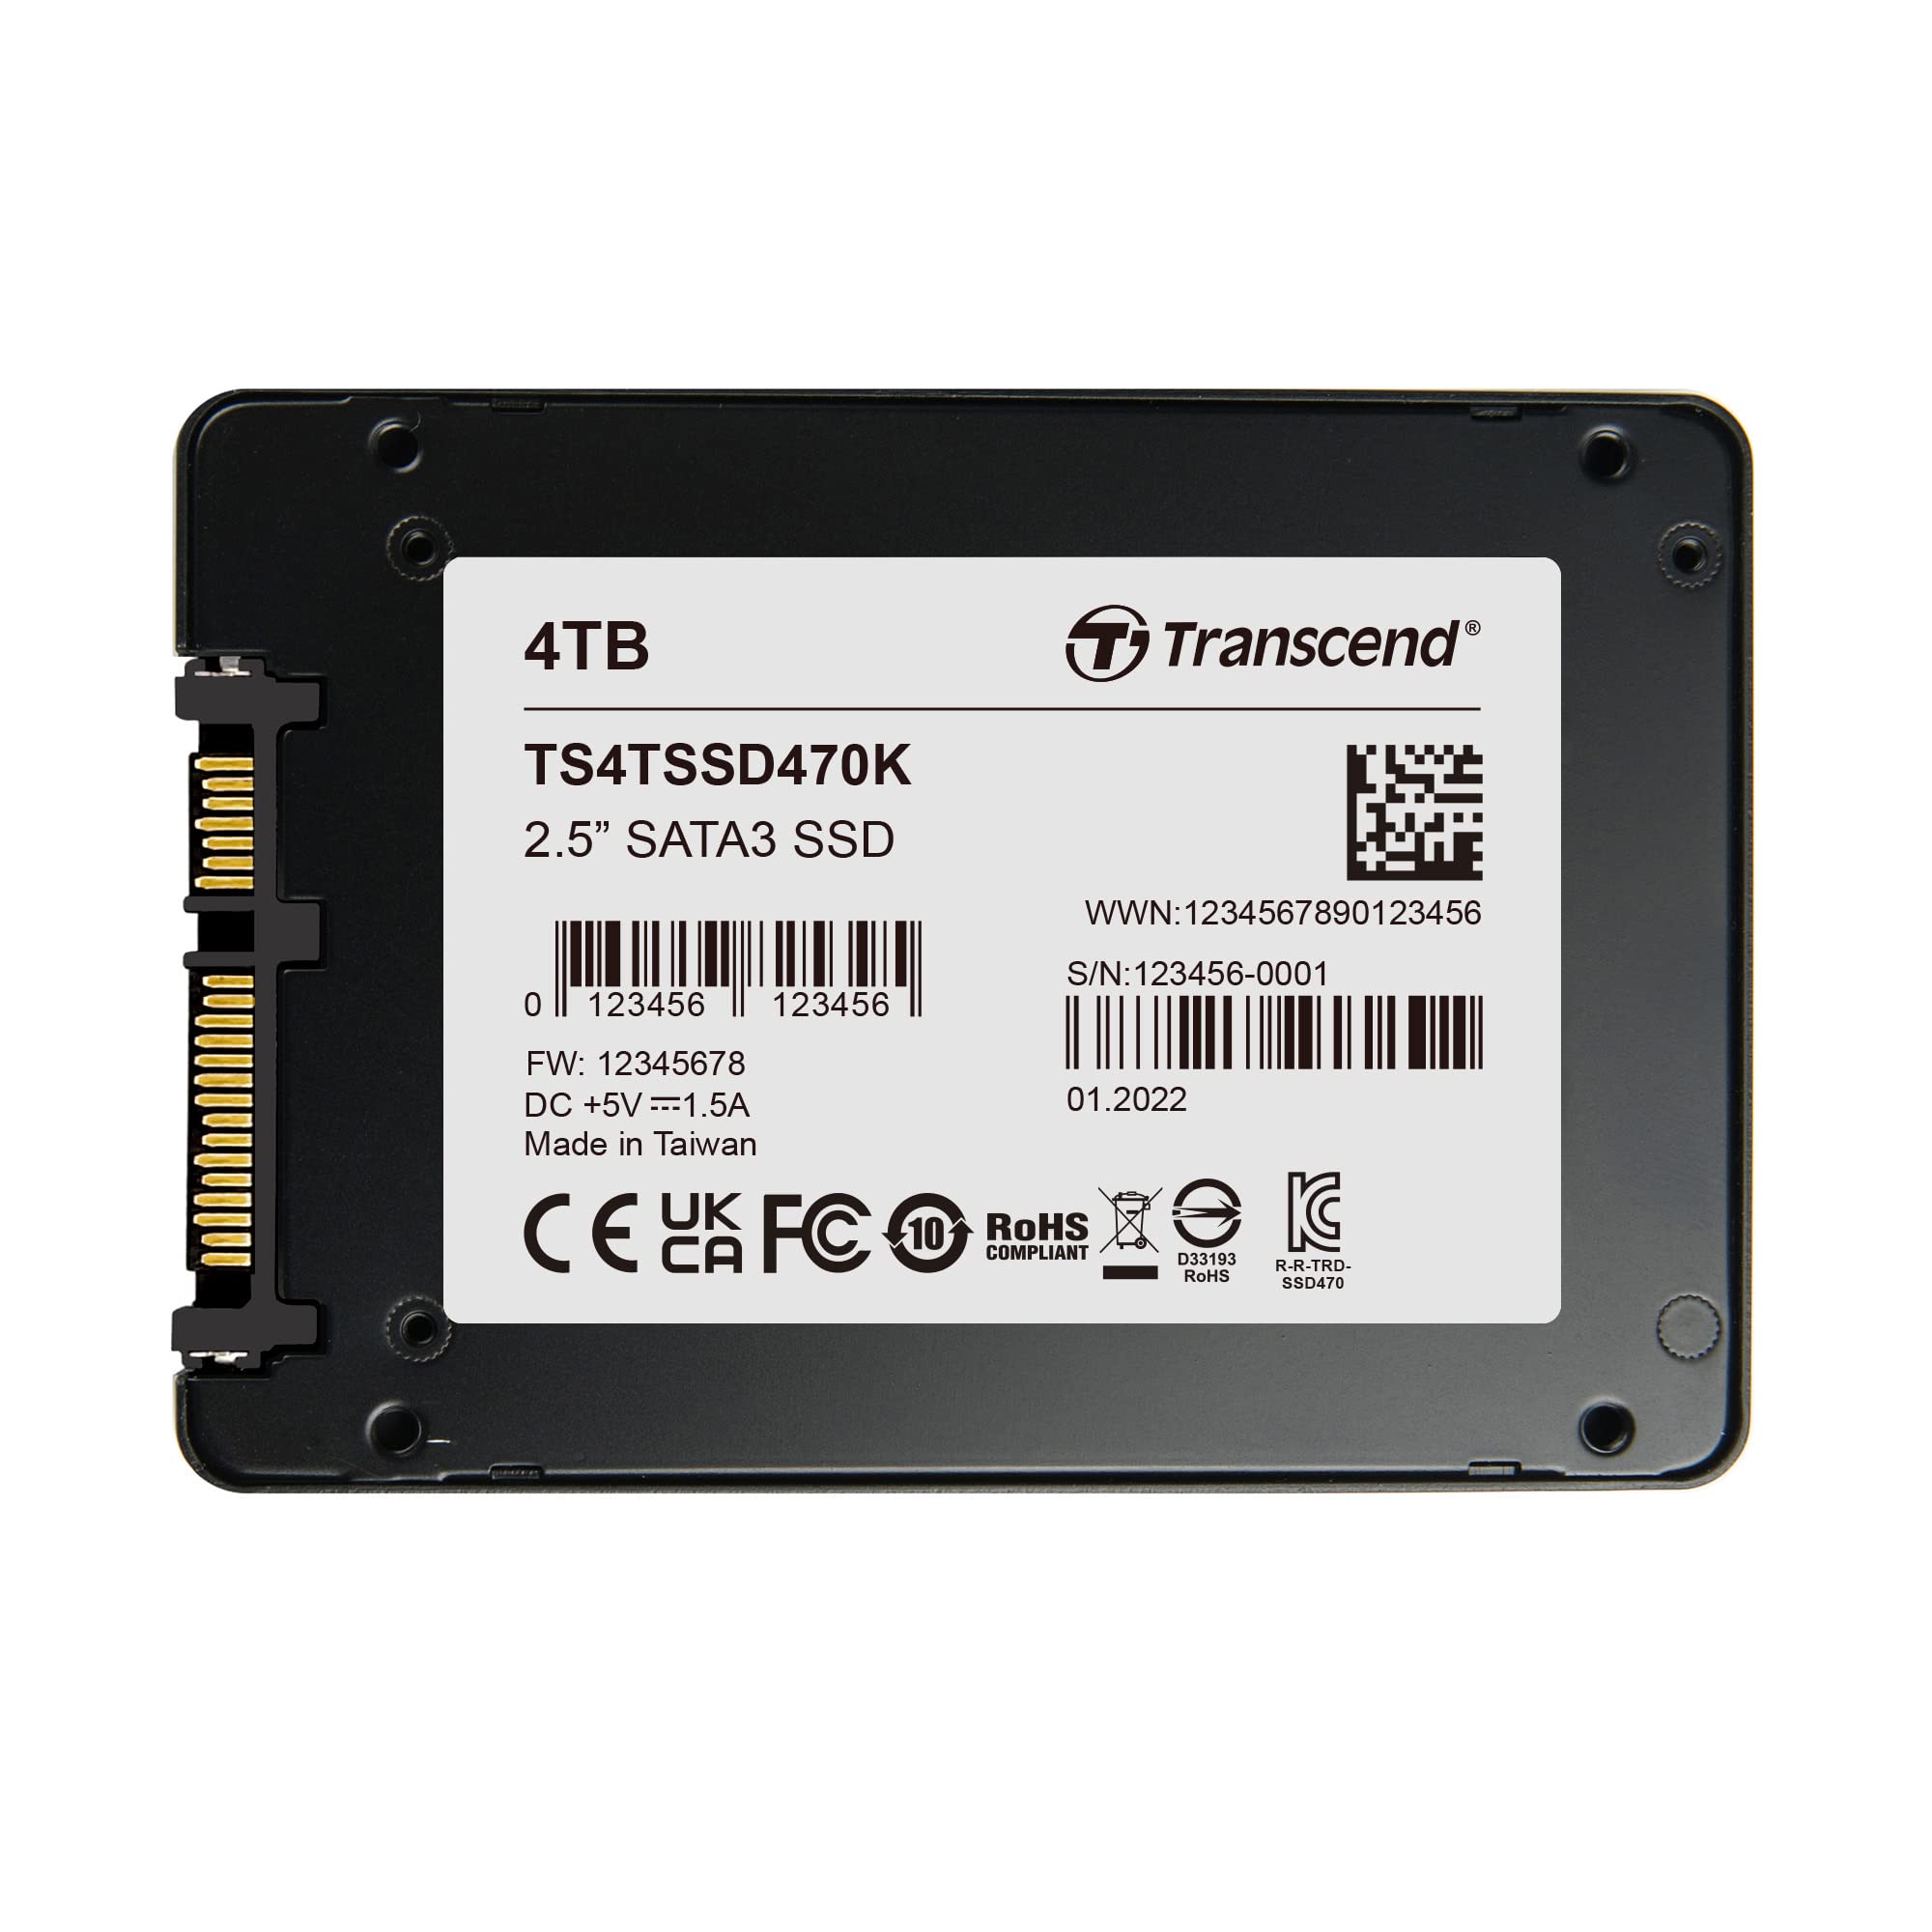 4TB SSD SATA3 BICS5 INDUSTRIAL